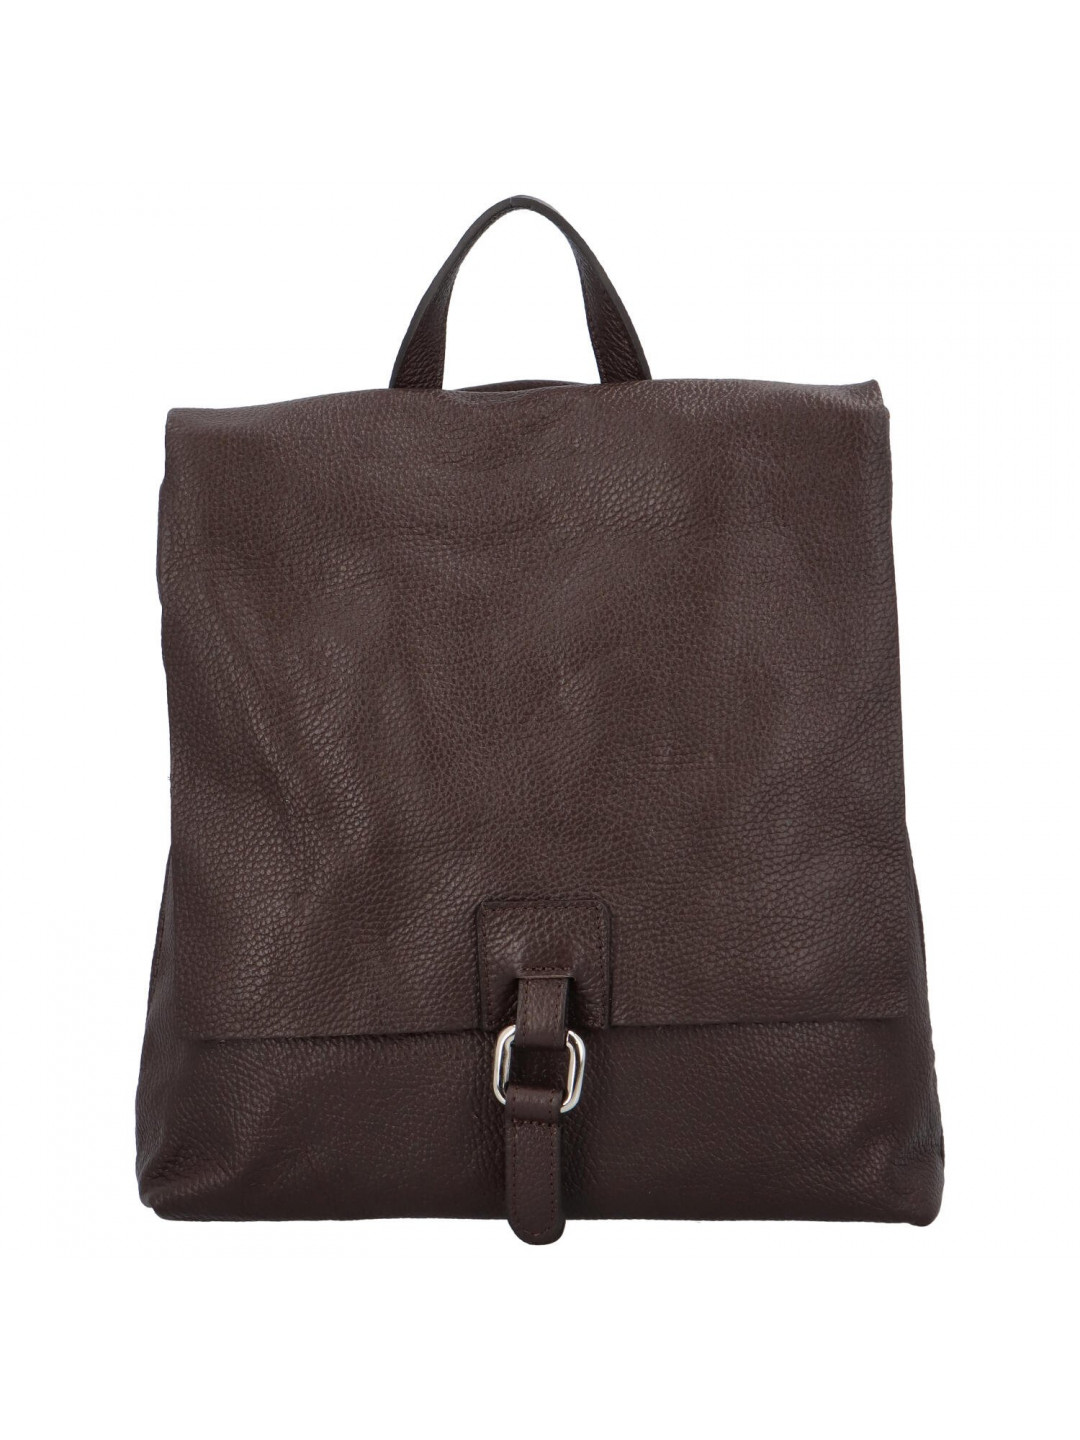 Dámský kožený batůžek kabelka tmavě hnědý – ItalY Francesco